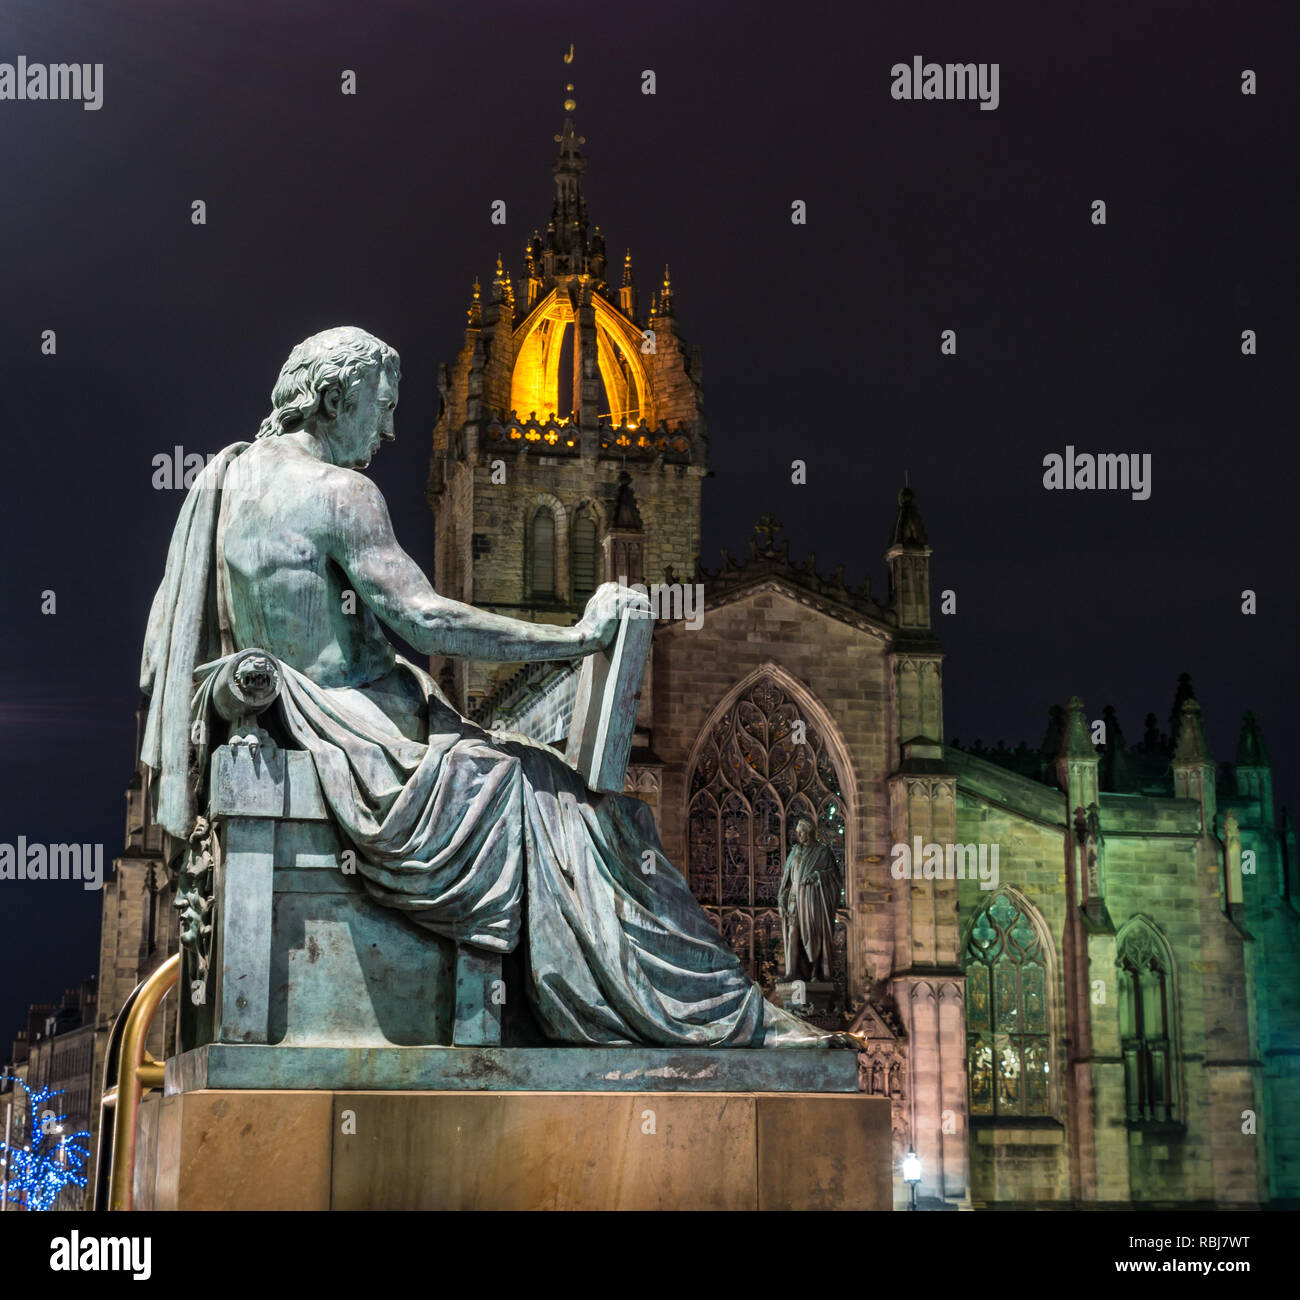 Statue de David Hume par Alexander Stoddart éclairé la nuit avec la cathédrale St Giles, Royal Mile, Édimbourg, Écosse, Royaume-Uni Banque D'Images